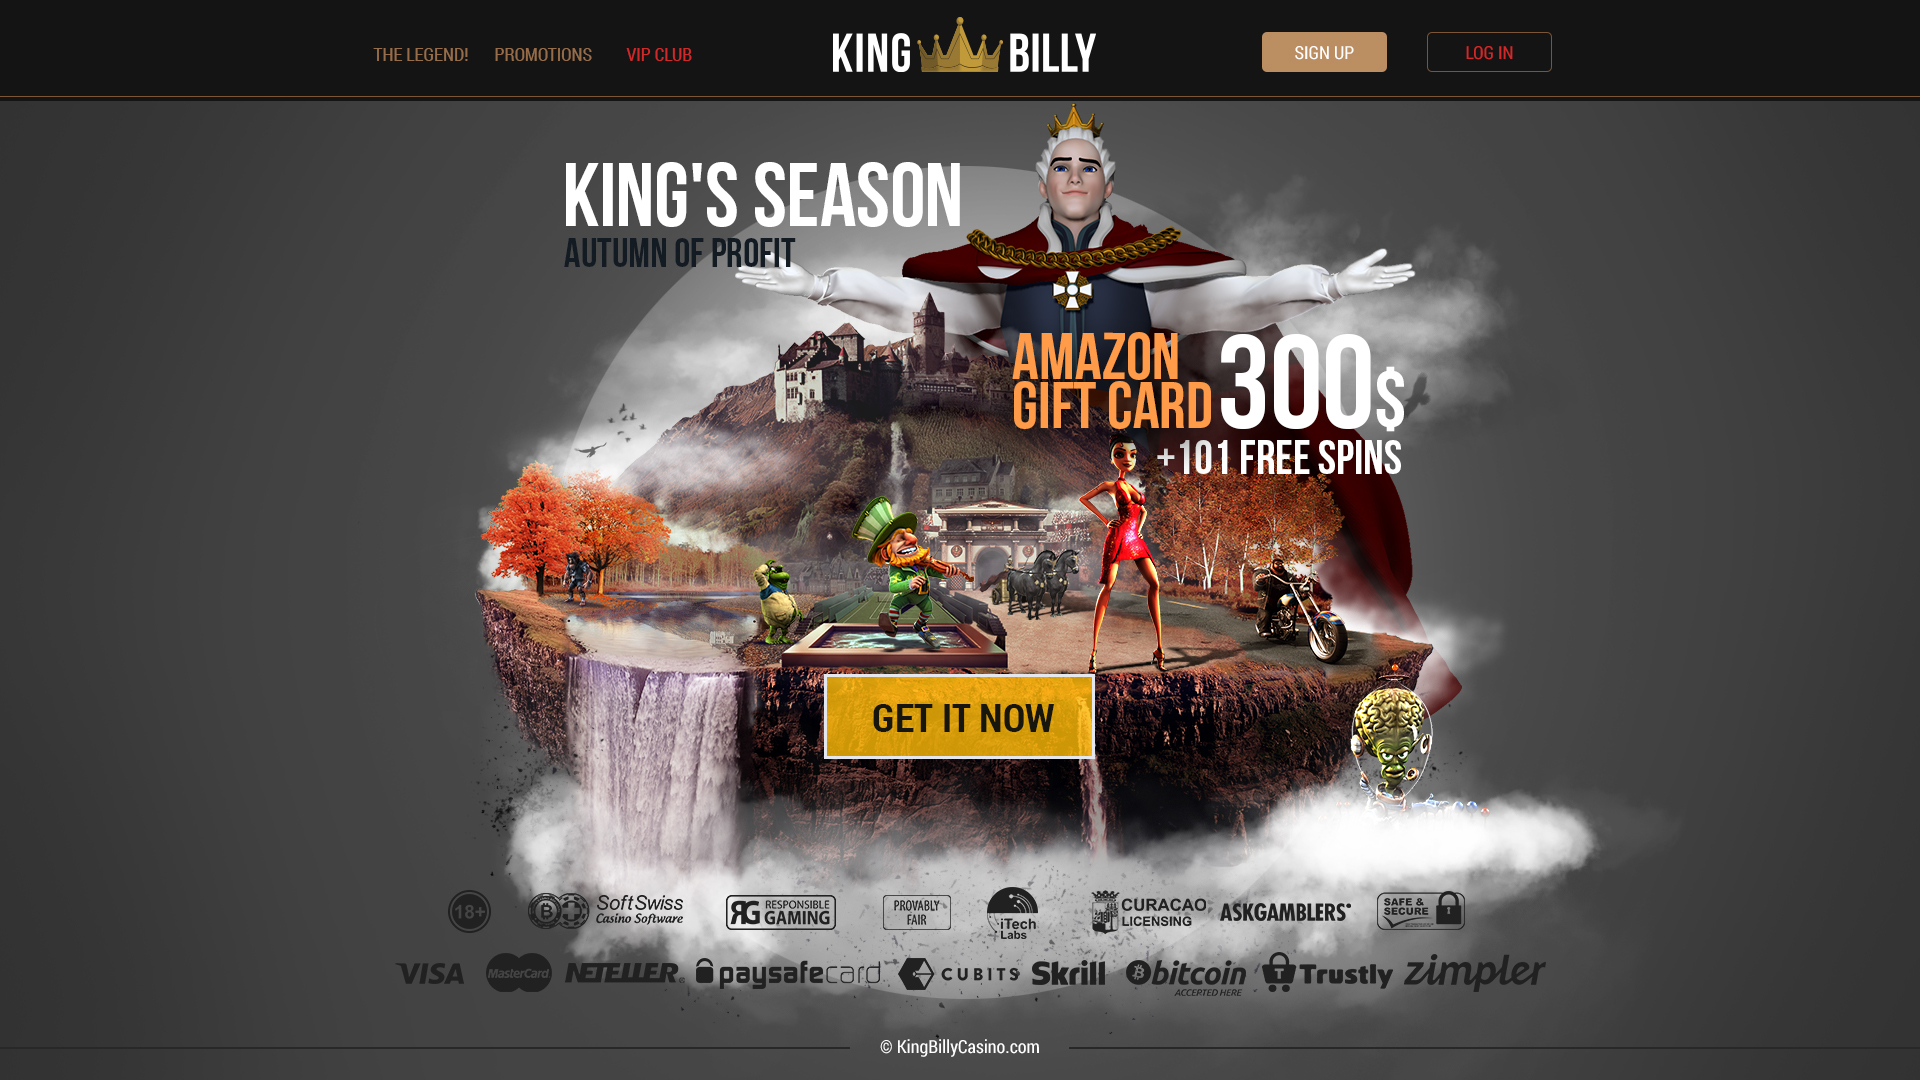 2017 09 KING BILLY KING'S SEASON LANDING PAGE 1920 X 1080.jpg